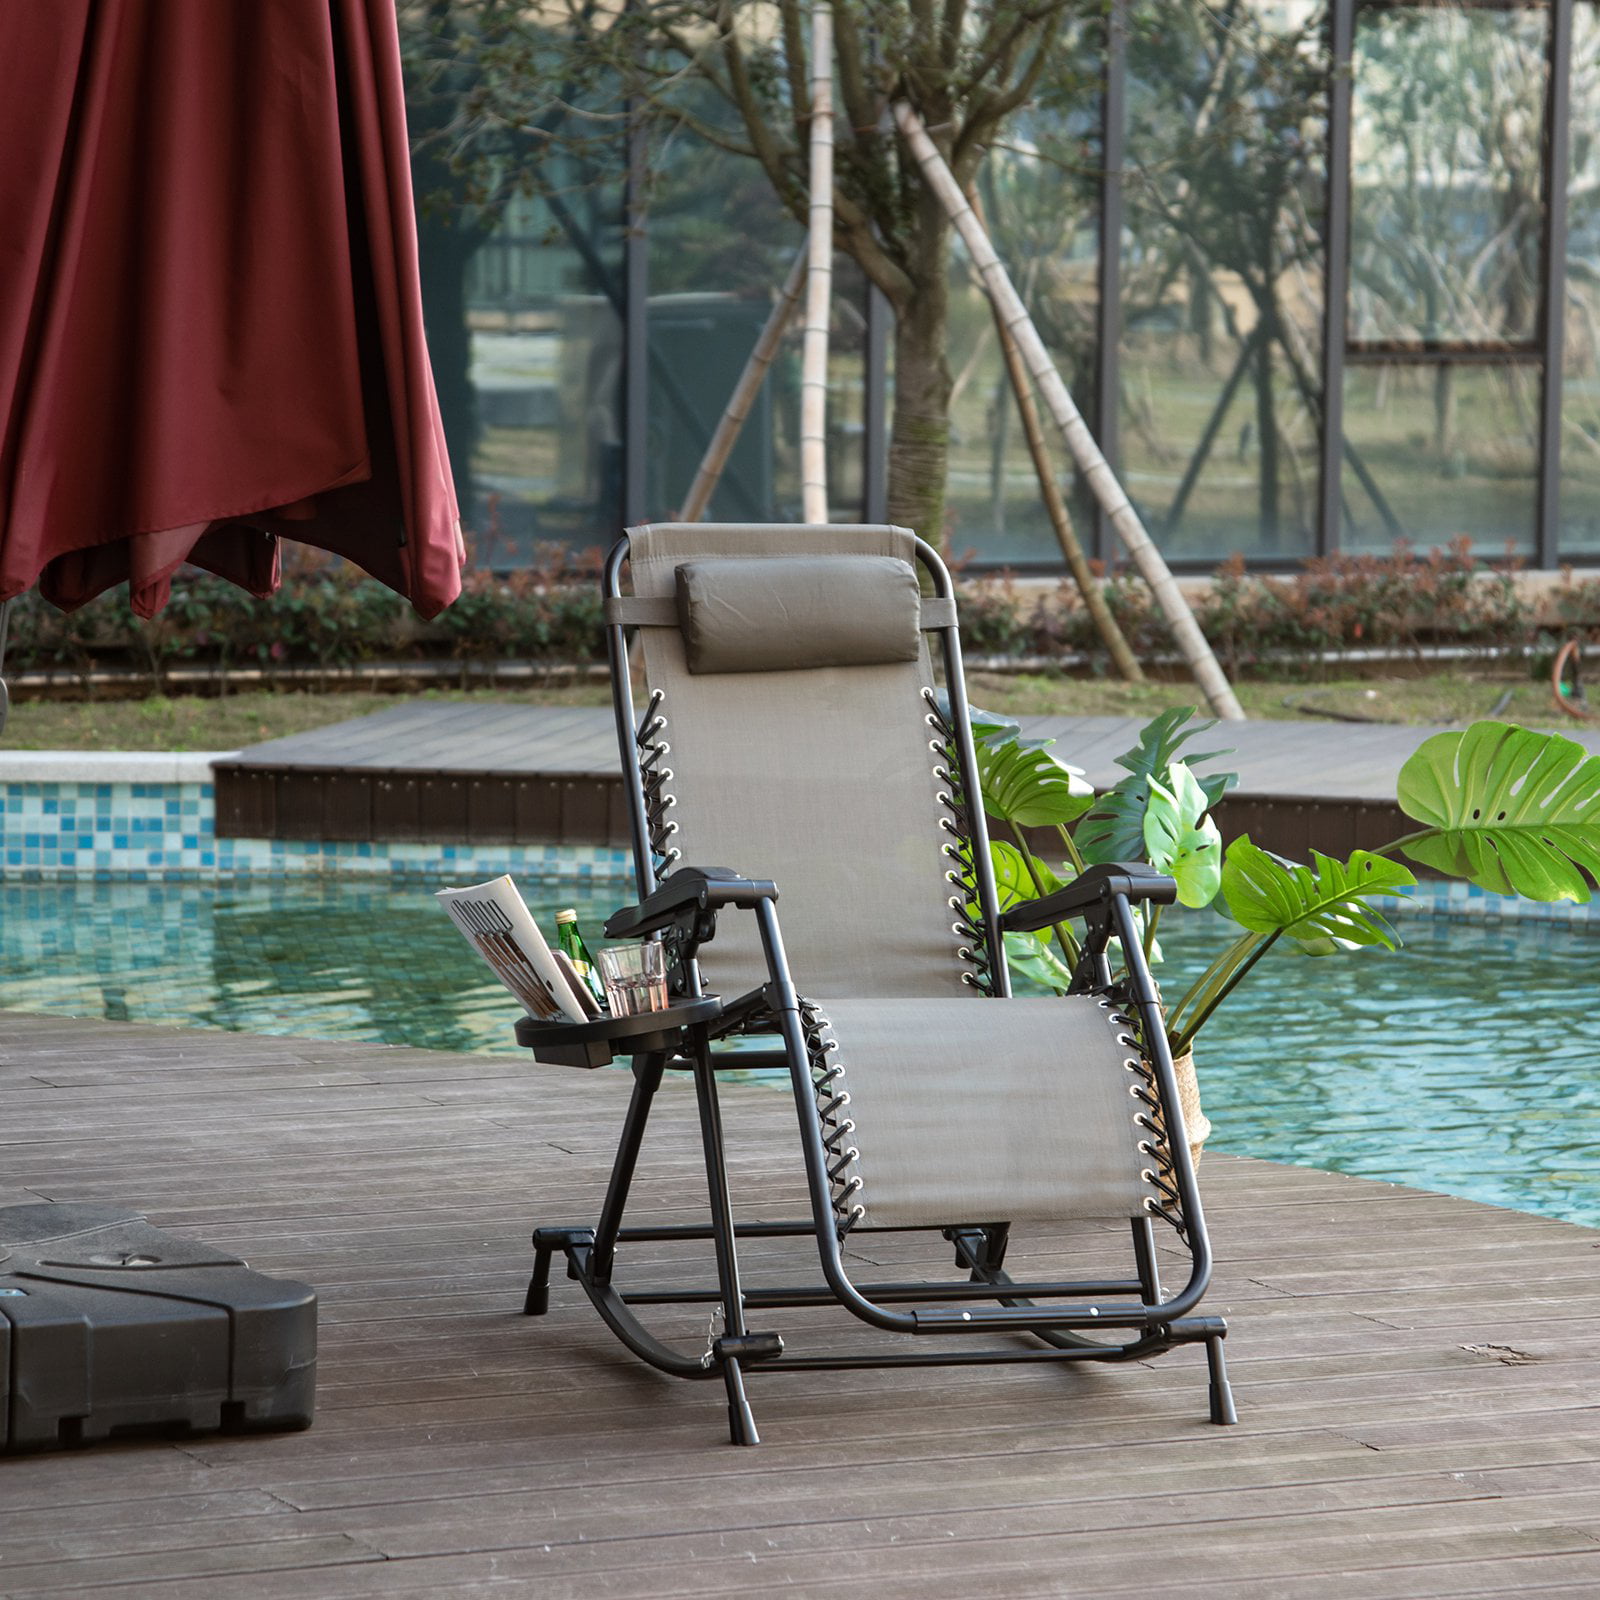 Gravity Garden Reclining Sun Chair Lounger